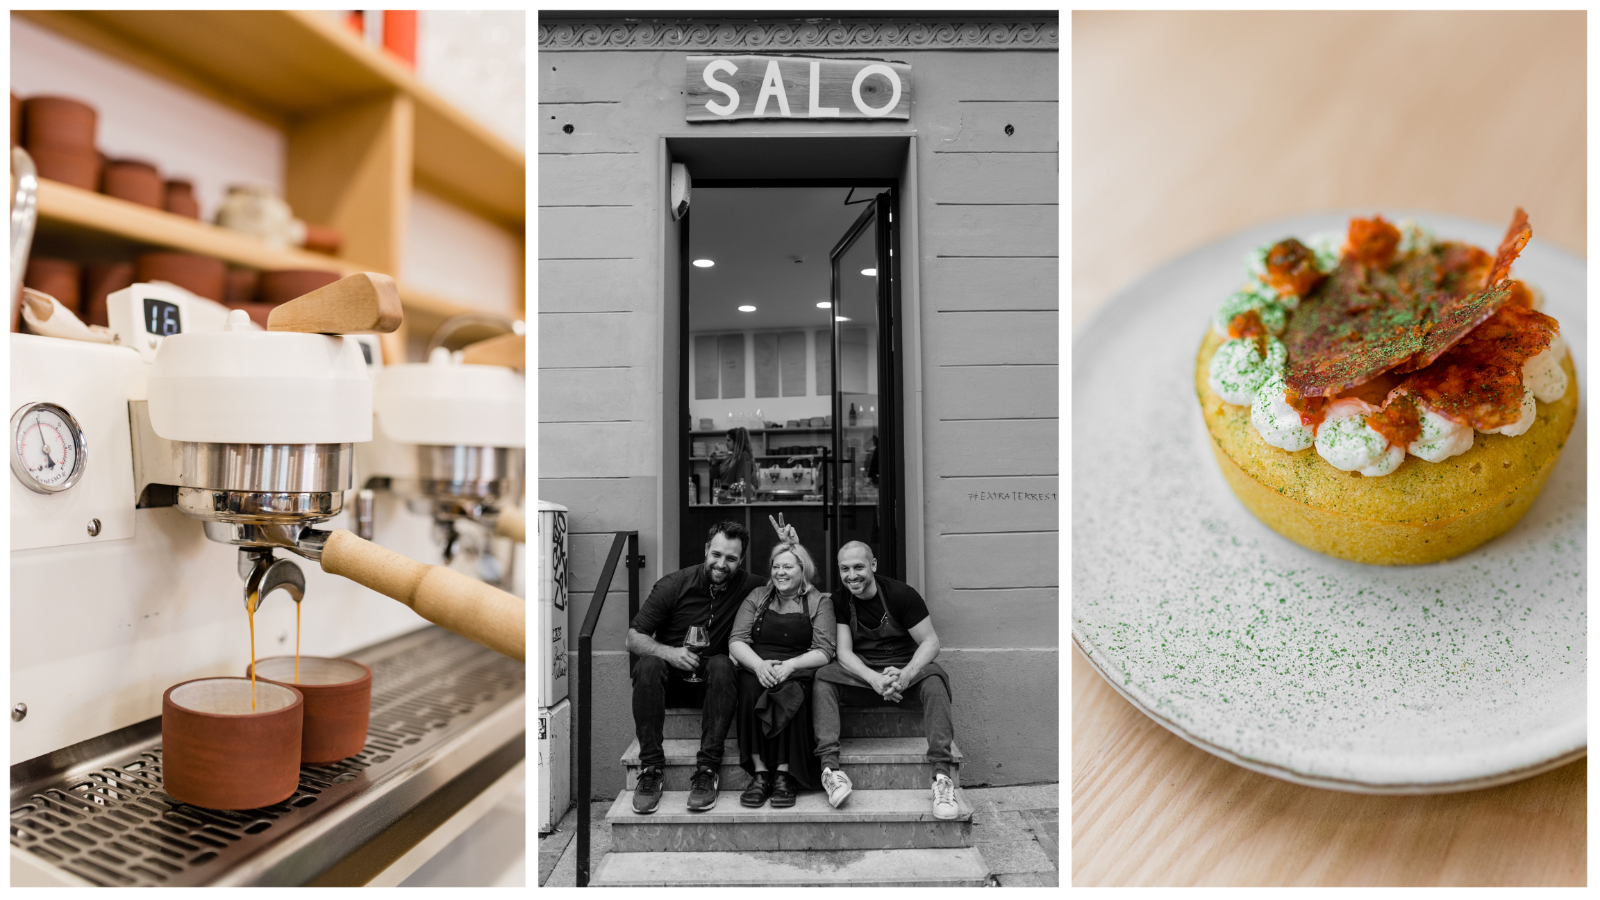 Na Dolcu je otvoren SALO, dnevni bistro i pekarnica Tvrtka Šakote, Matije Powlison Belkovića i Petre Jelenić